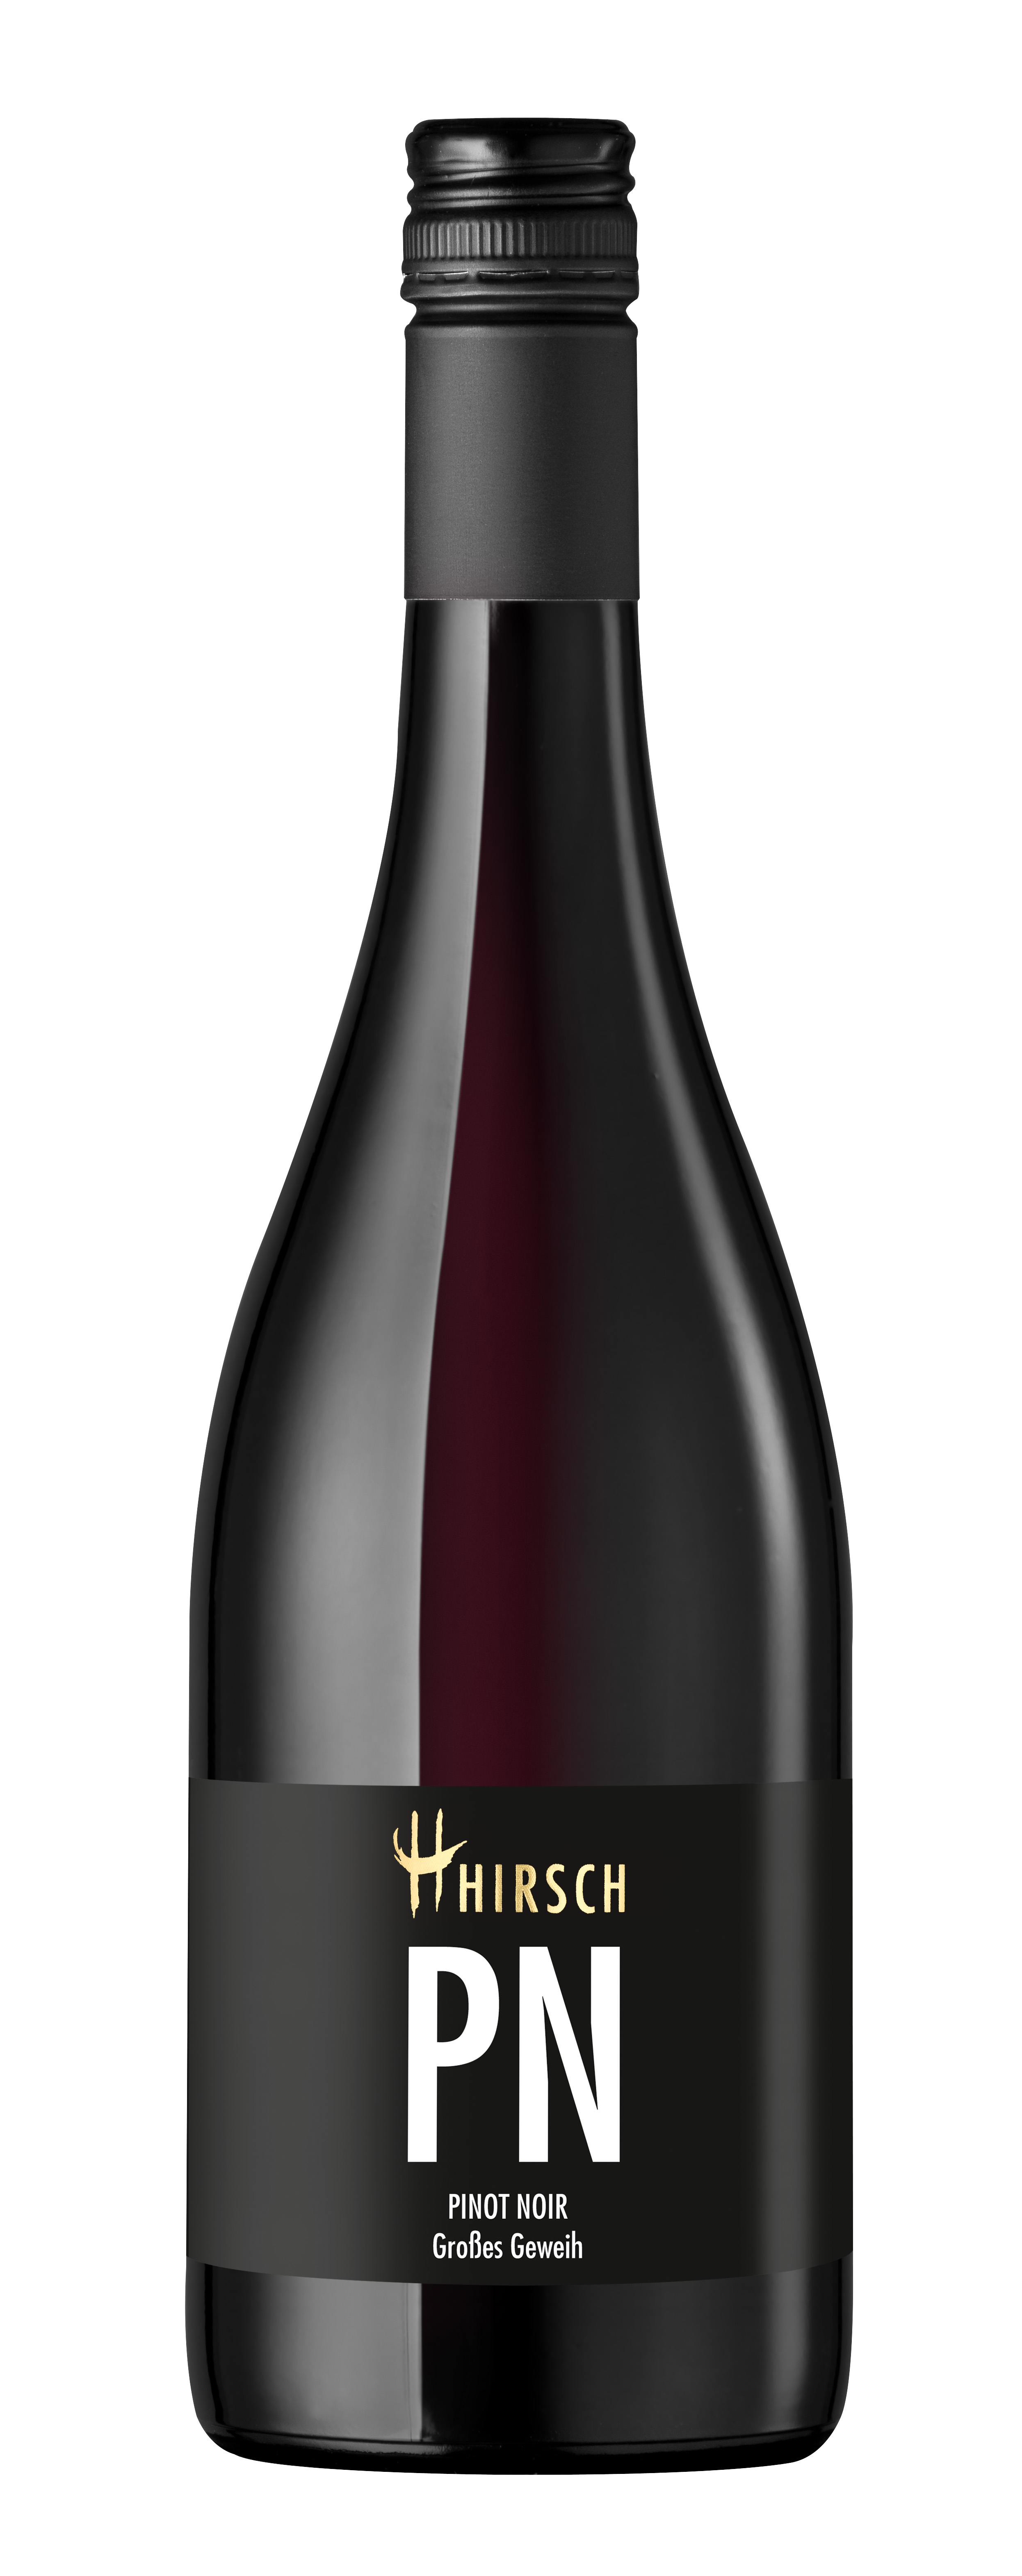 2019 PN Pinot Noir trocken "Grosses Geweih" 0,75 L - Christian Hirsch